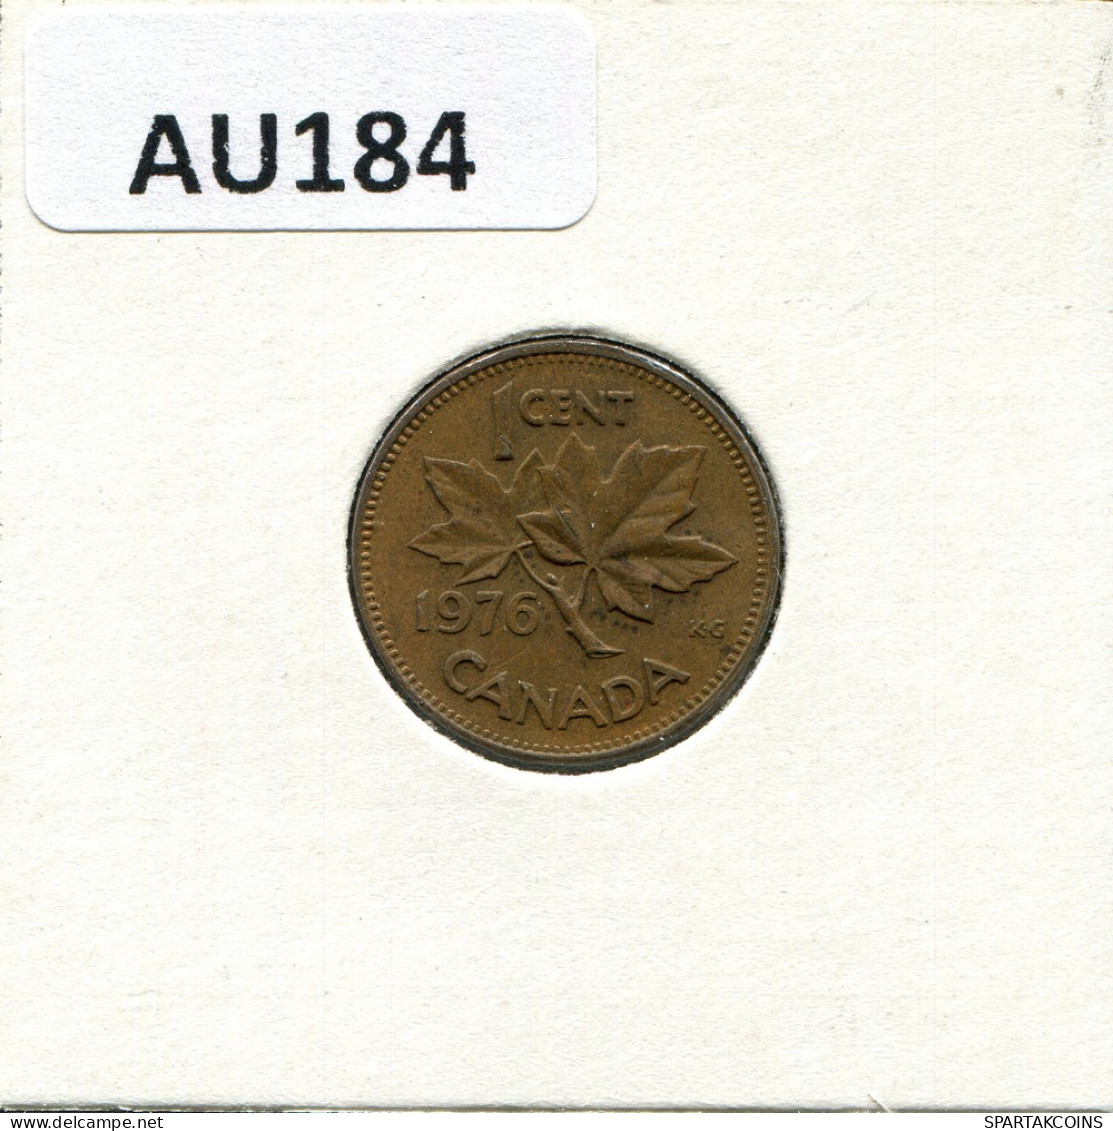 1 CENT 1976 CANADA Coin #AU184.U - Canada